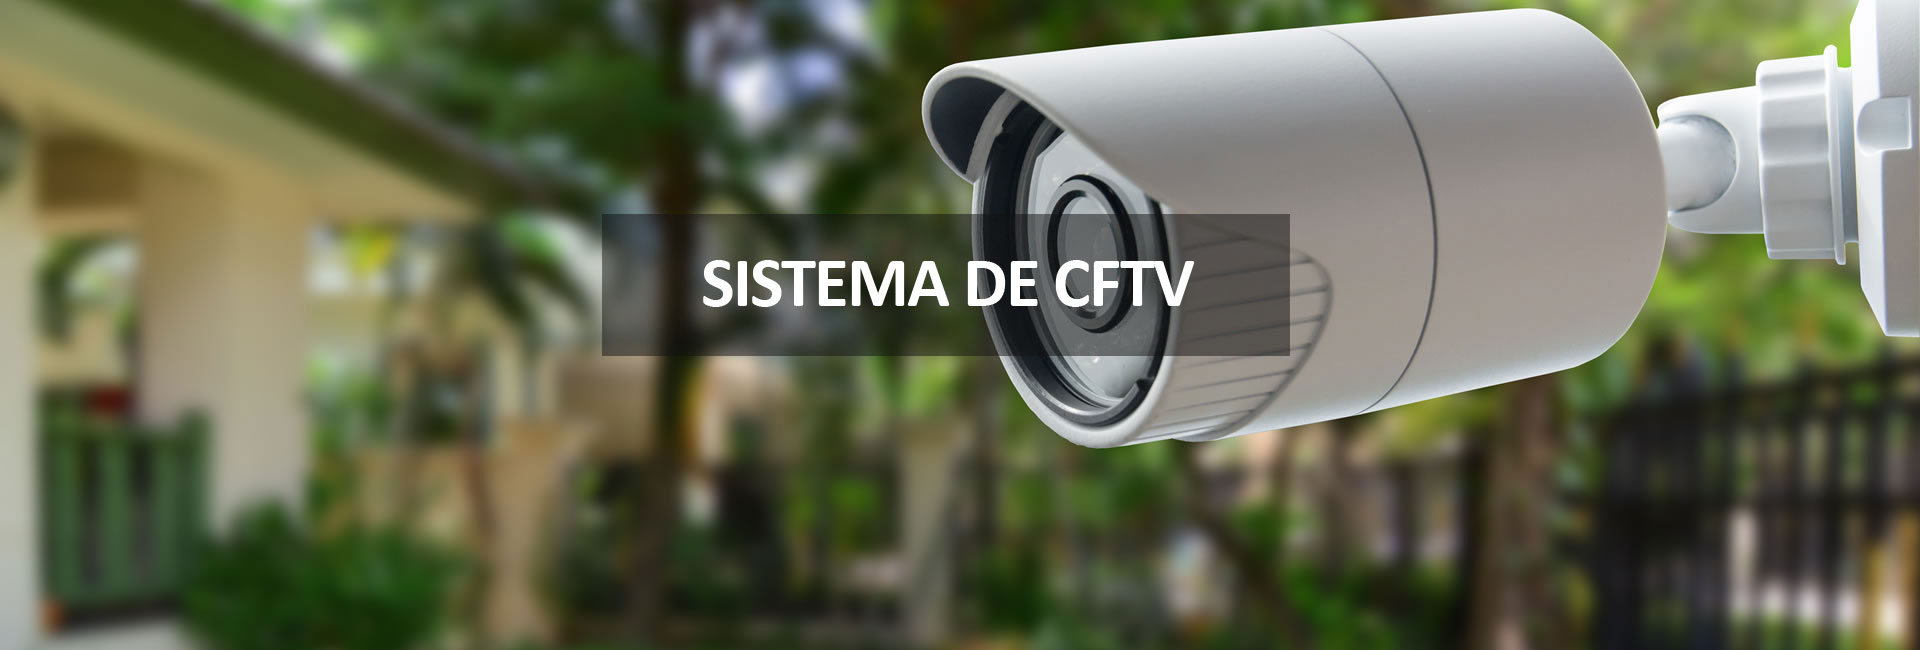 Sistema de CFTV